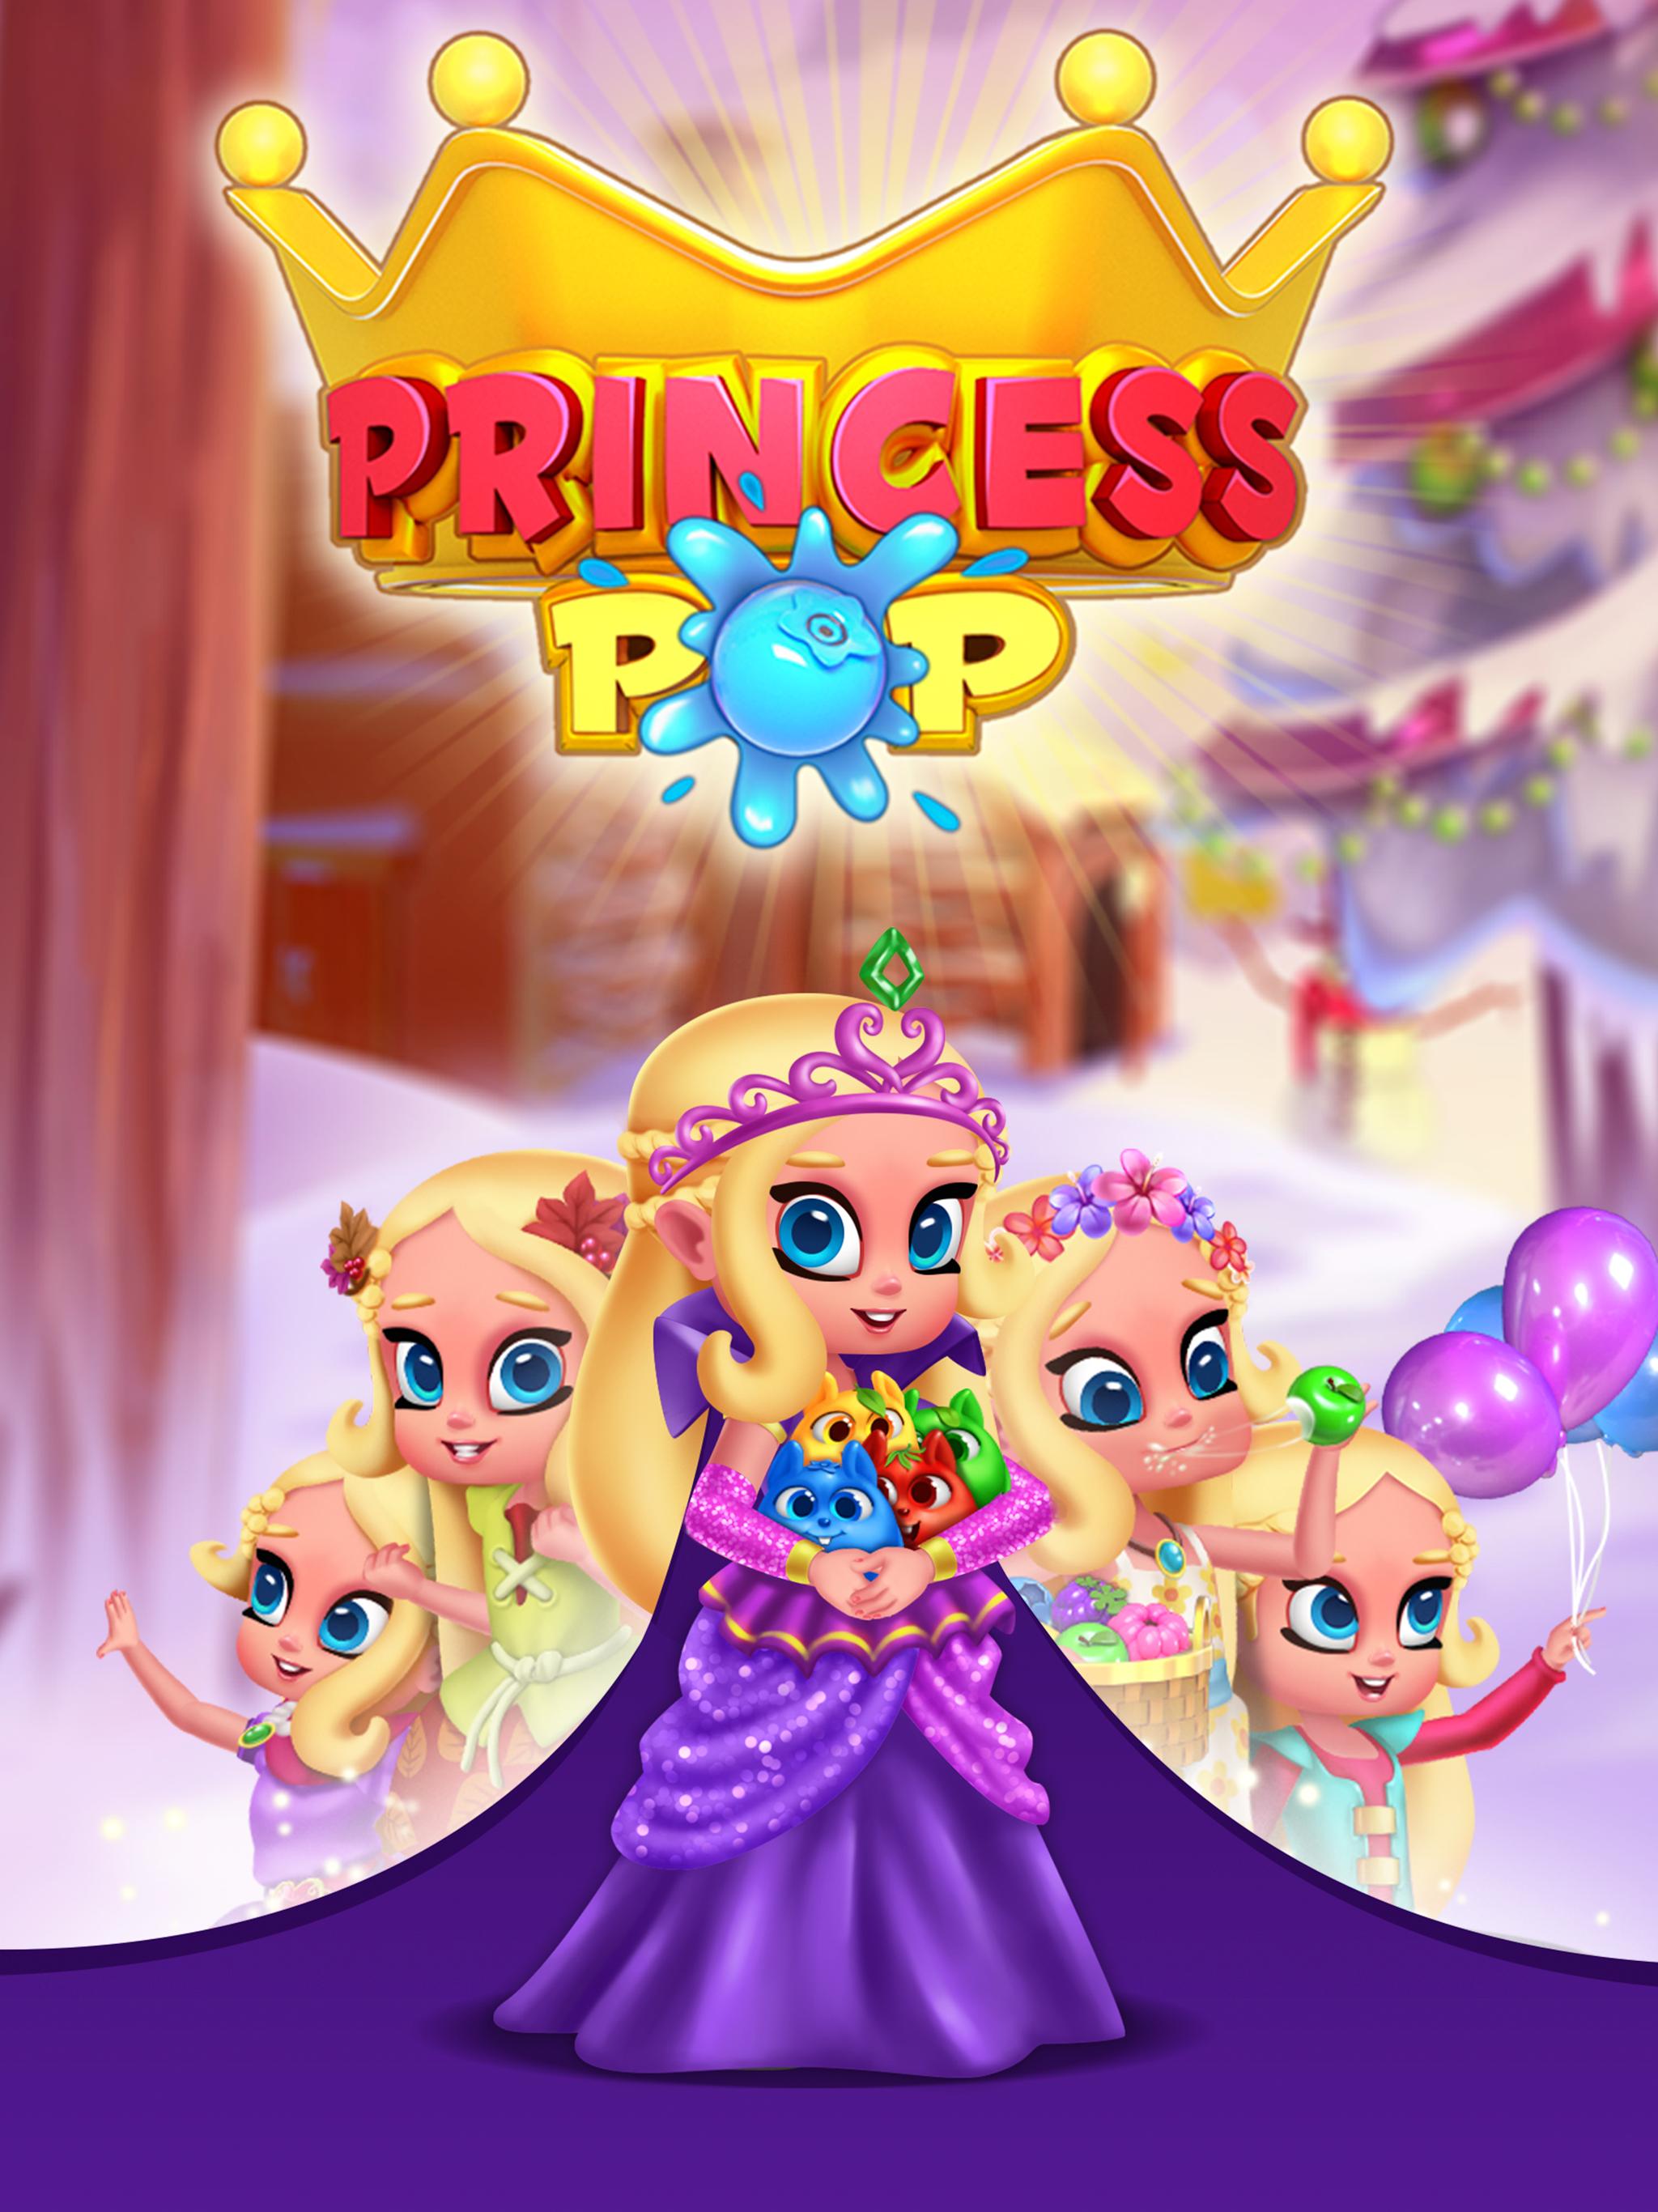 Princesa Pop - Juegos de burbujas for Android - APK Download